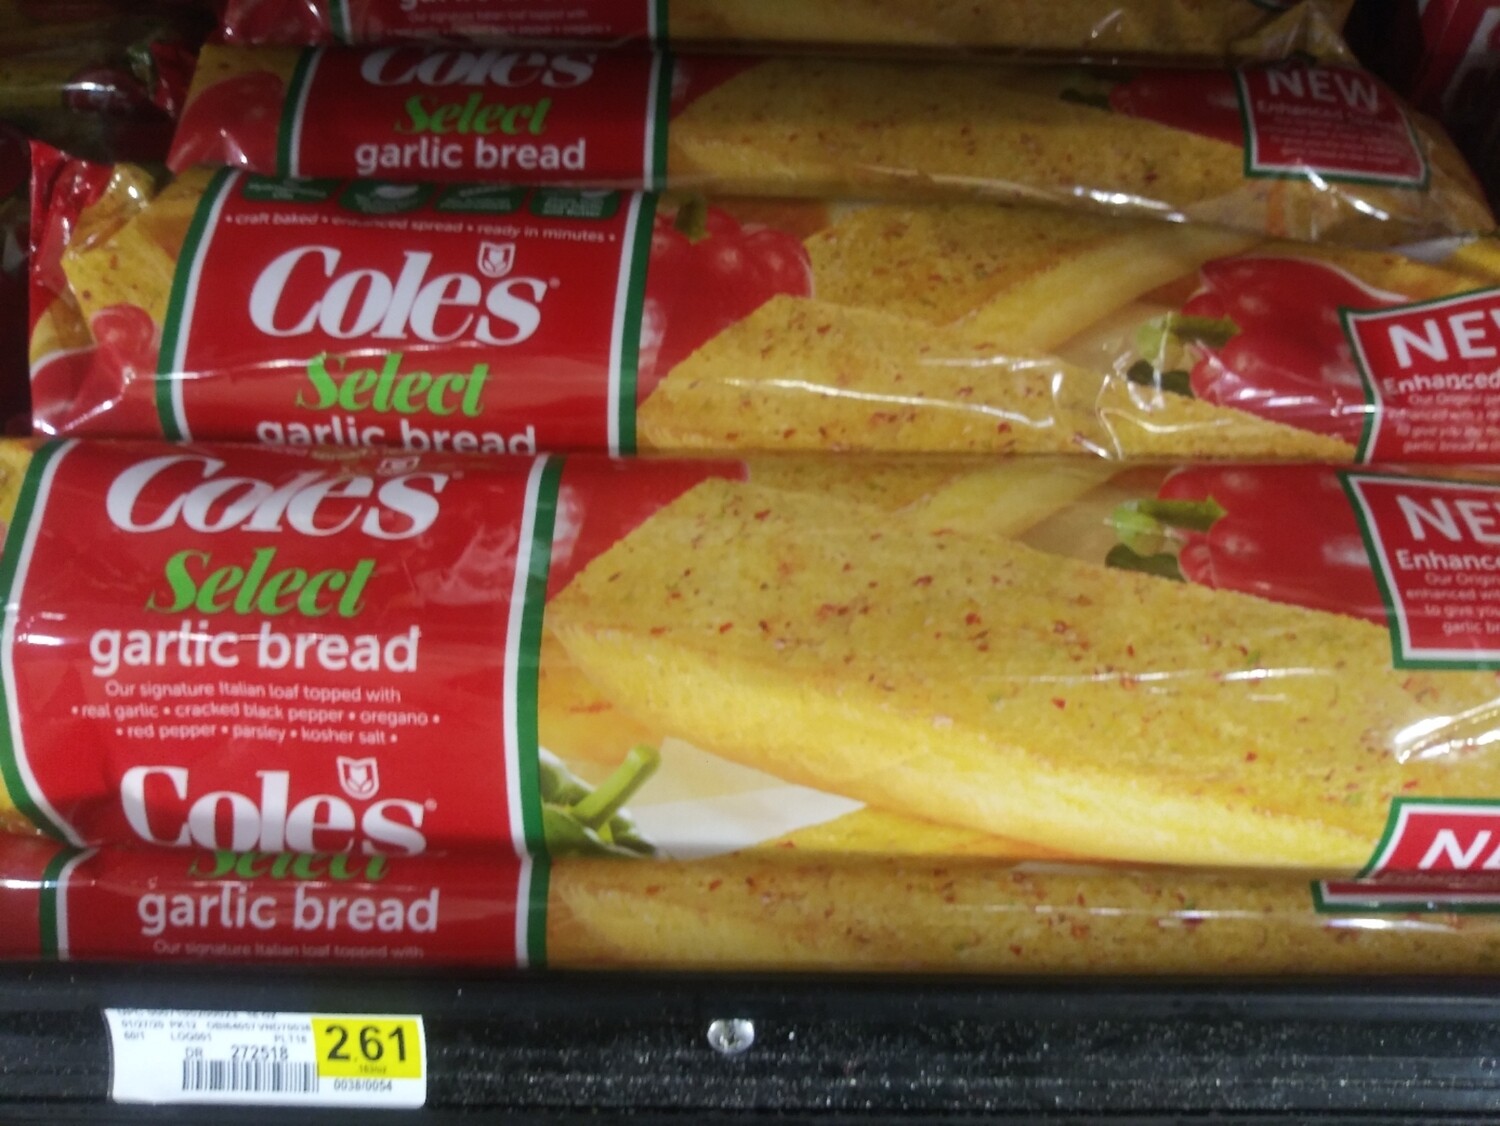 Cash Saver: Coles Select Garlic Bread